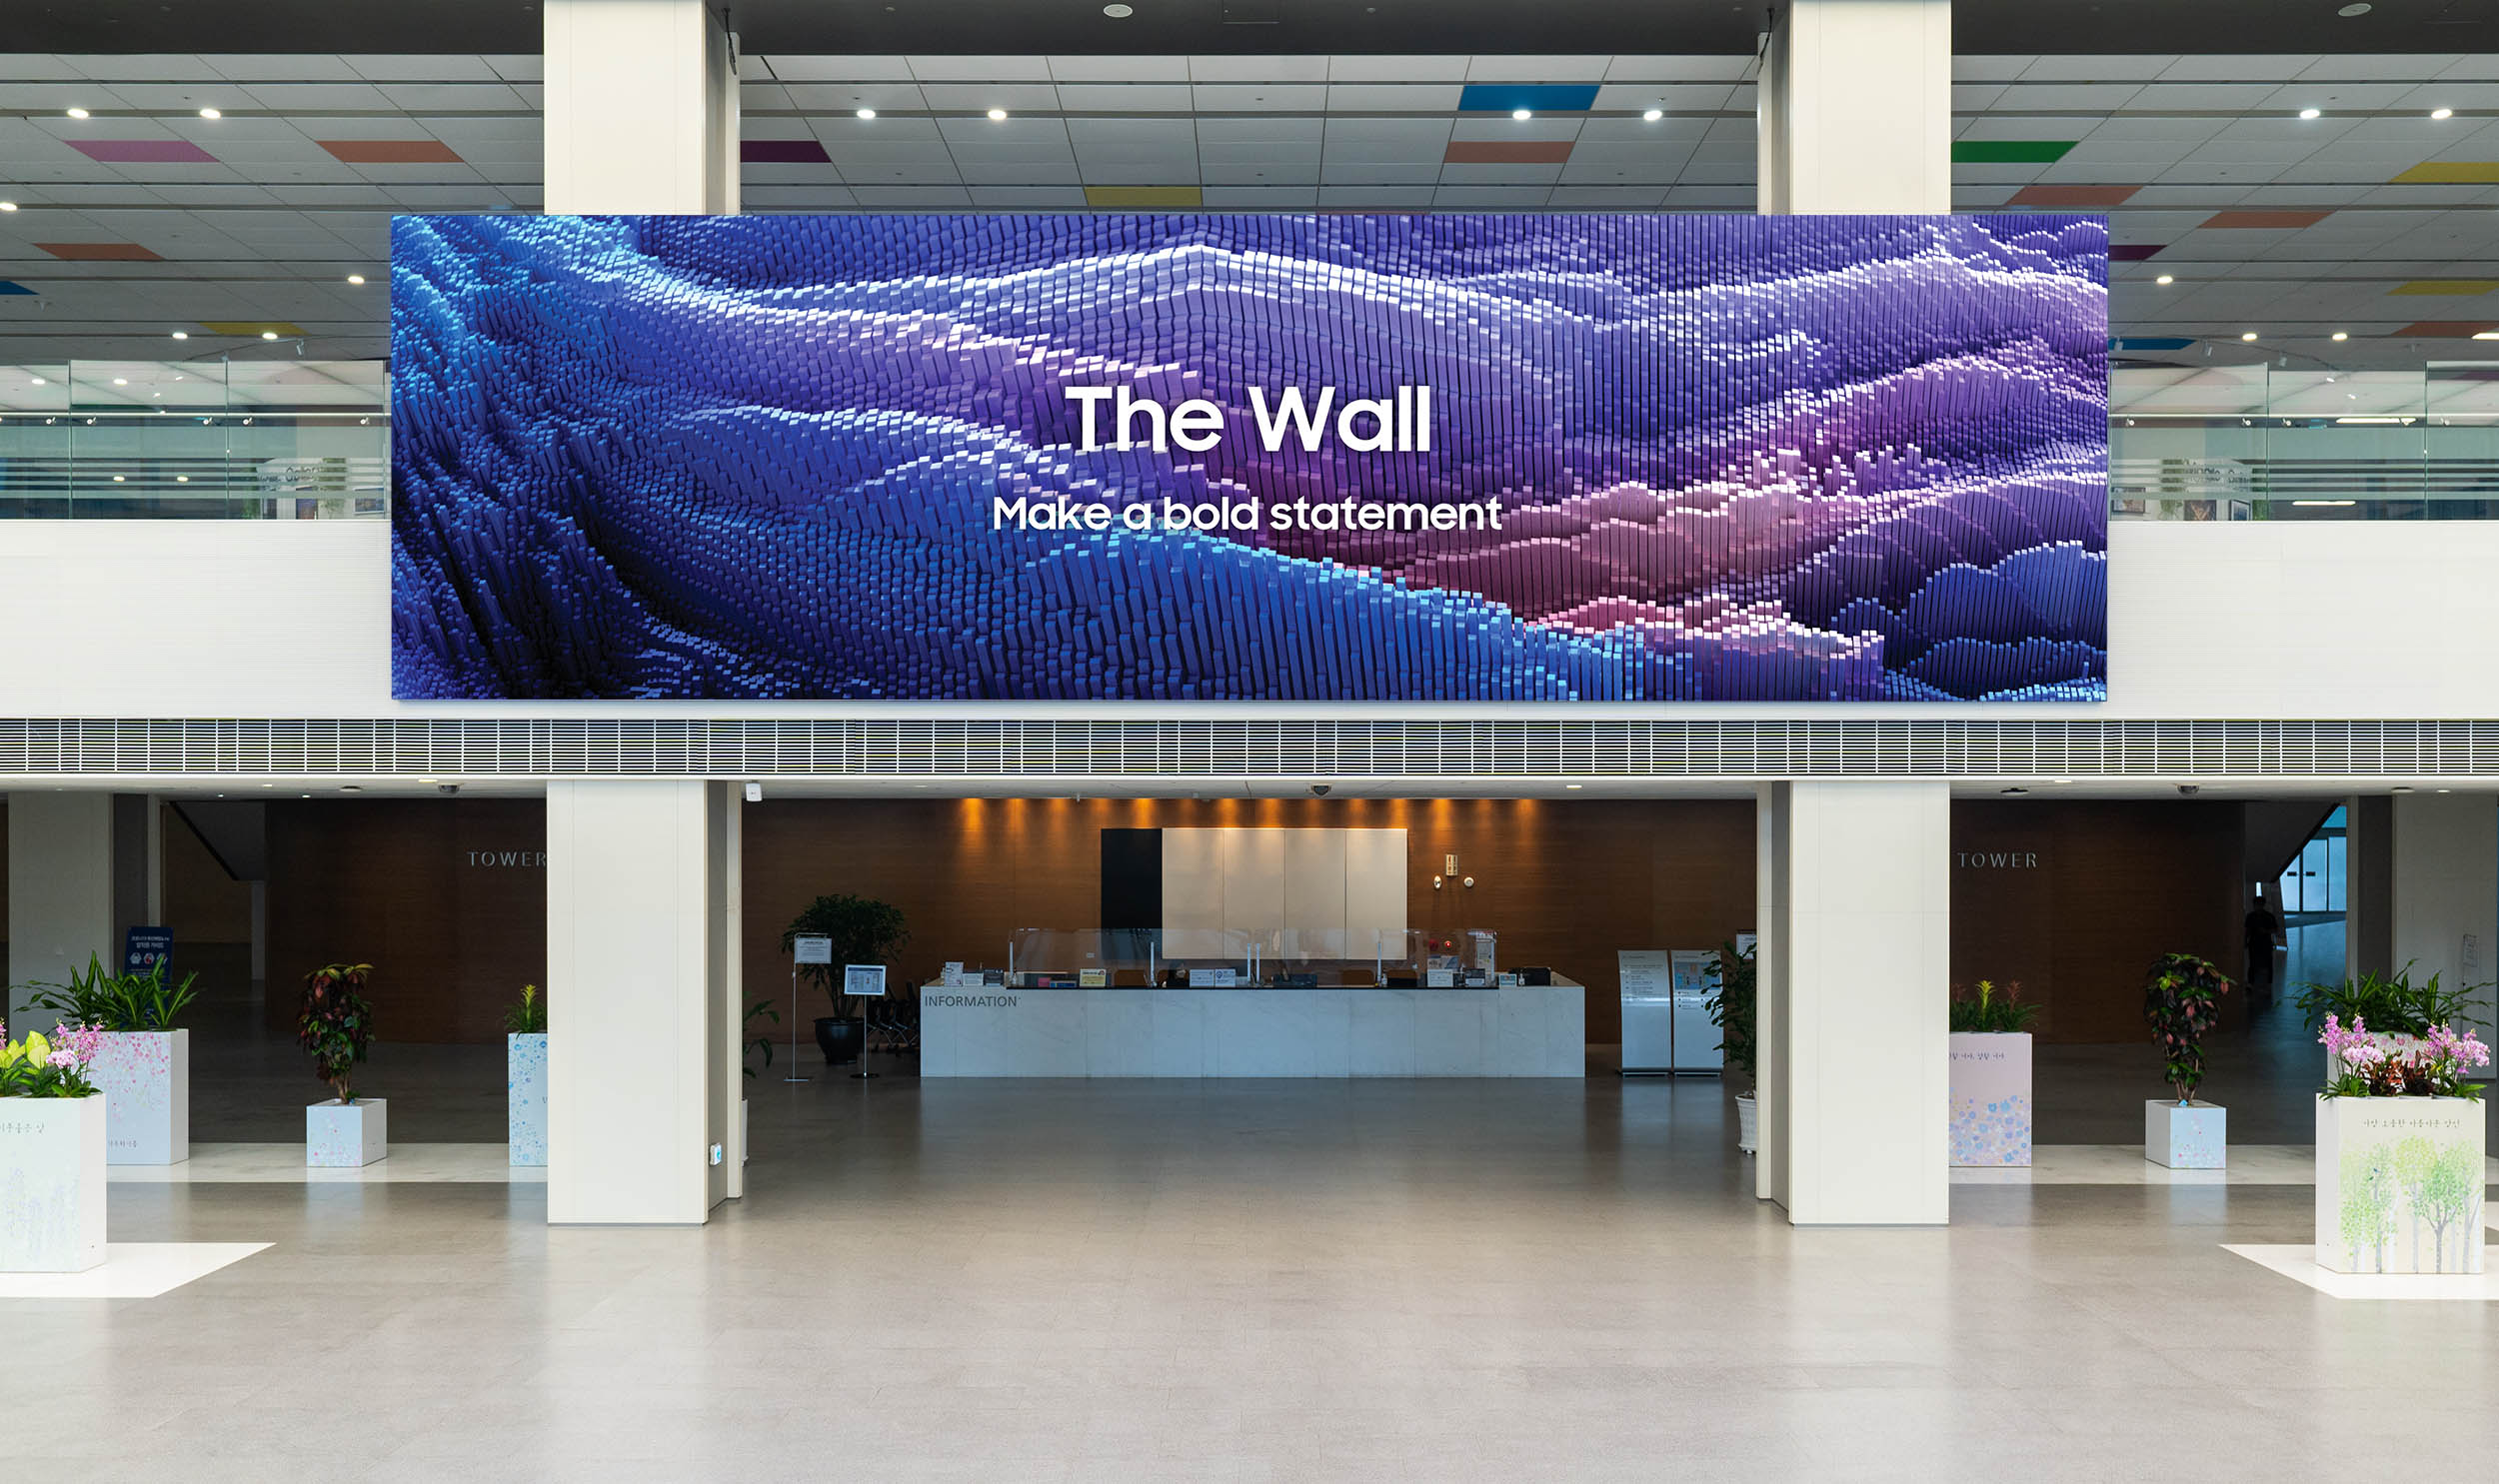 Samsung ra mắt màn hình The Wall 2021 trên toàn cầu